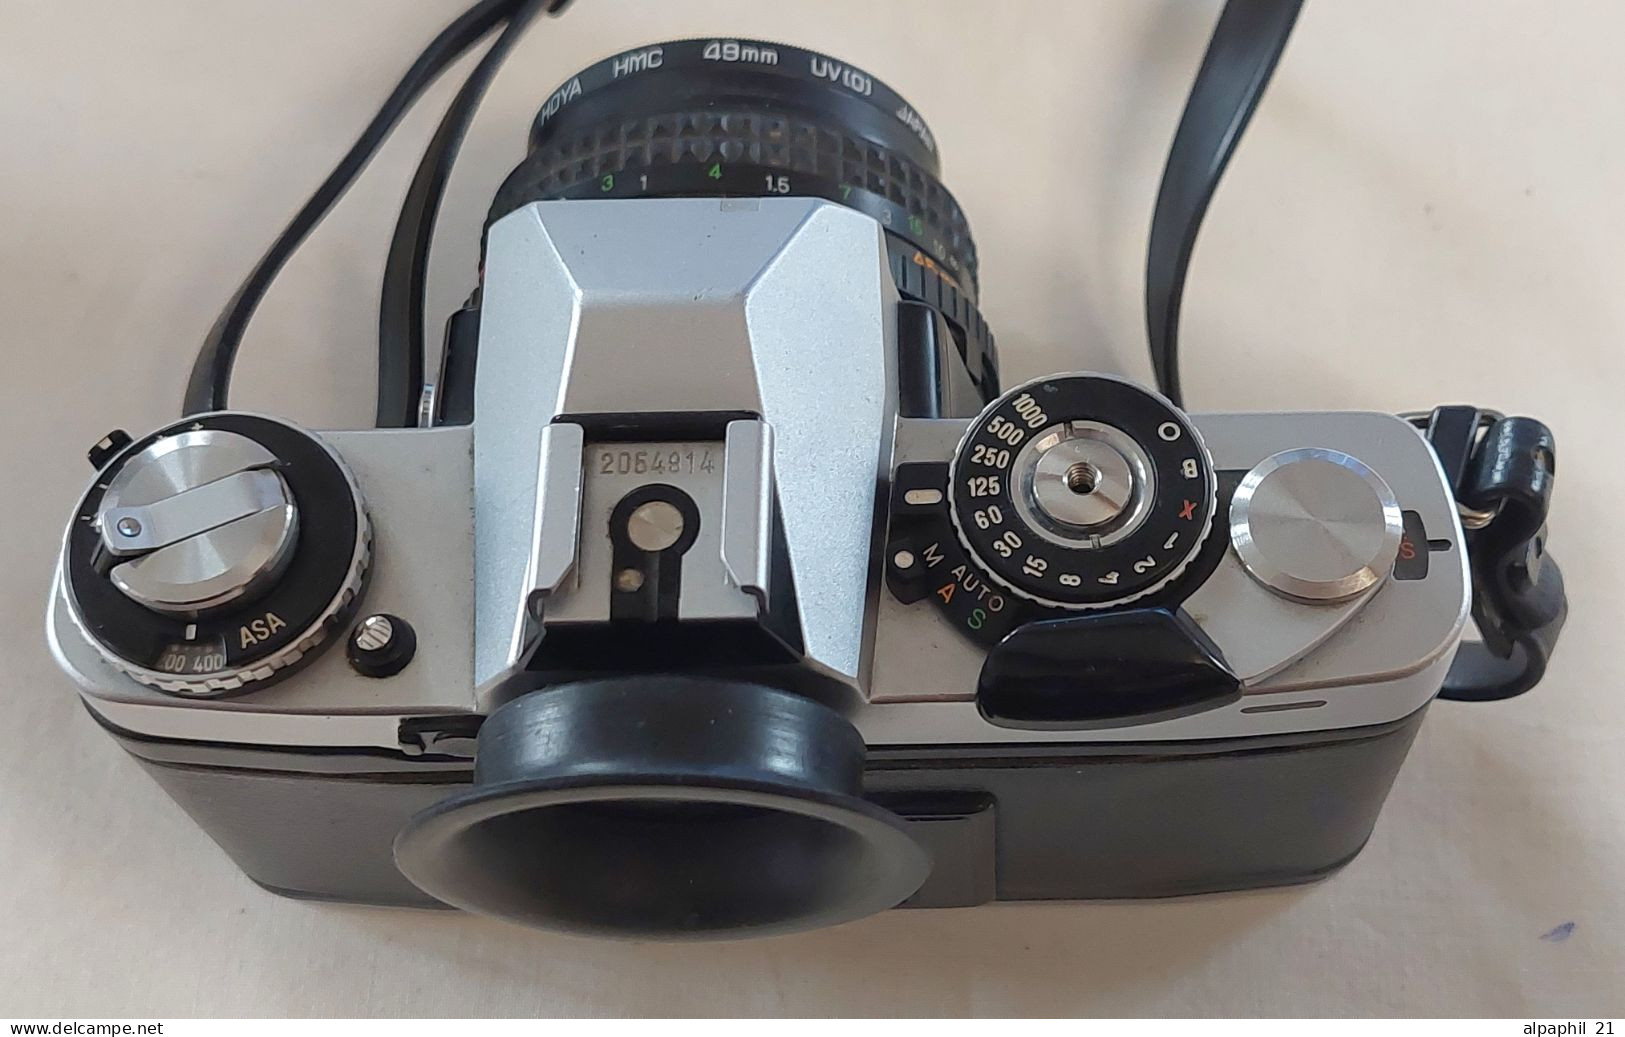 Minolta XD7 Silver With Lenses And Flash - Macchine Fotografiche